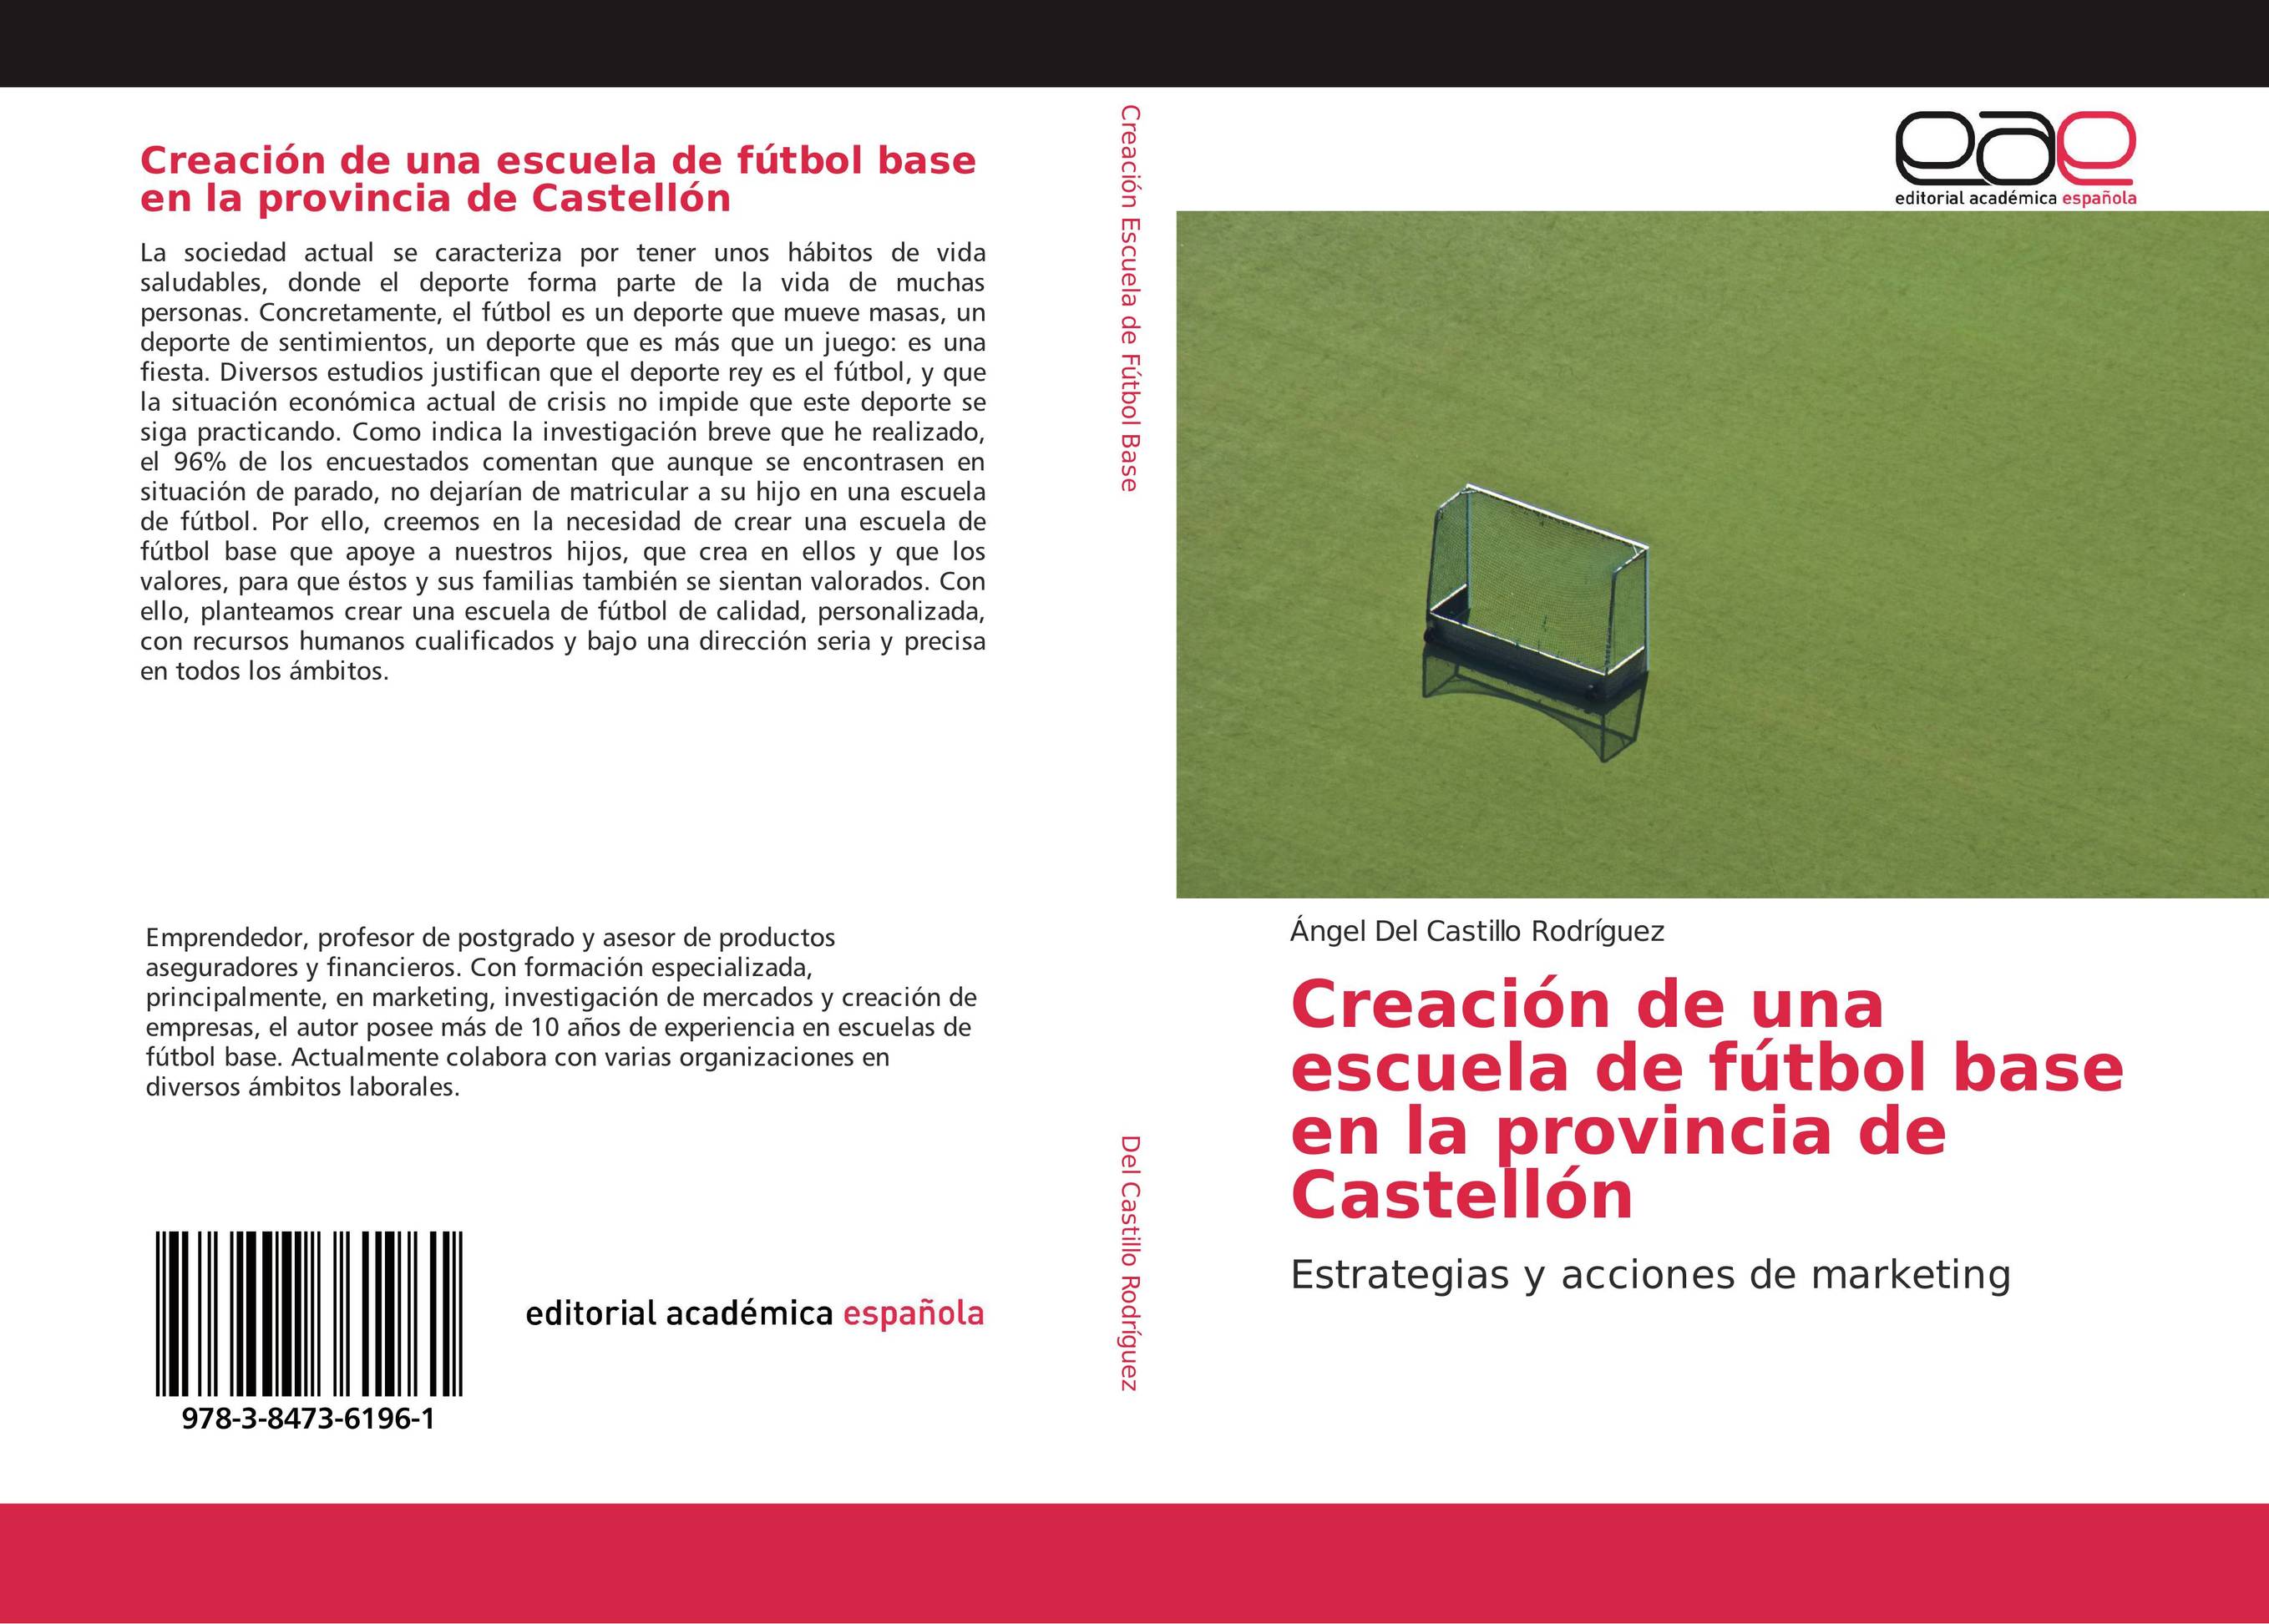 Creación de una escuela de fútbol base en la provincia de Castellón